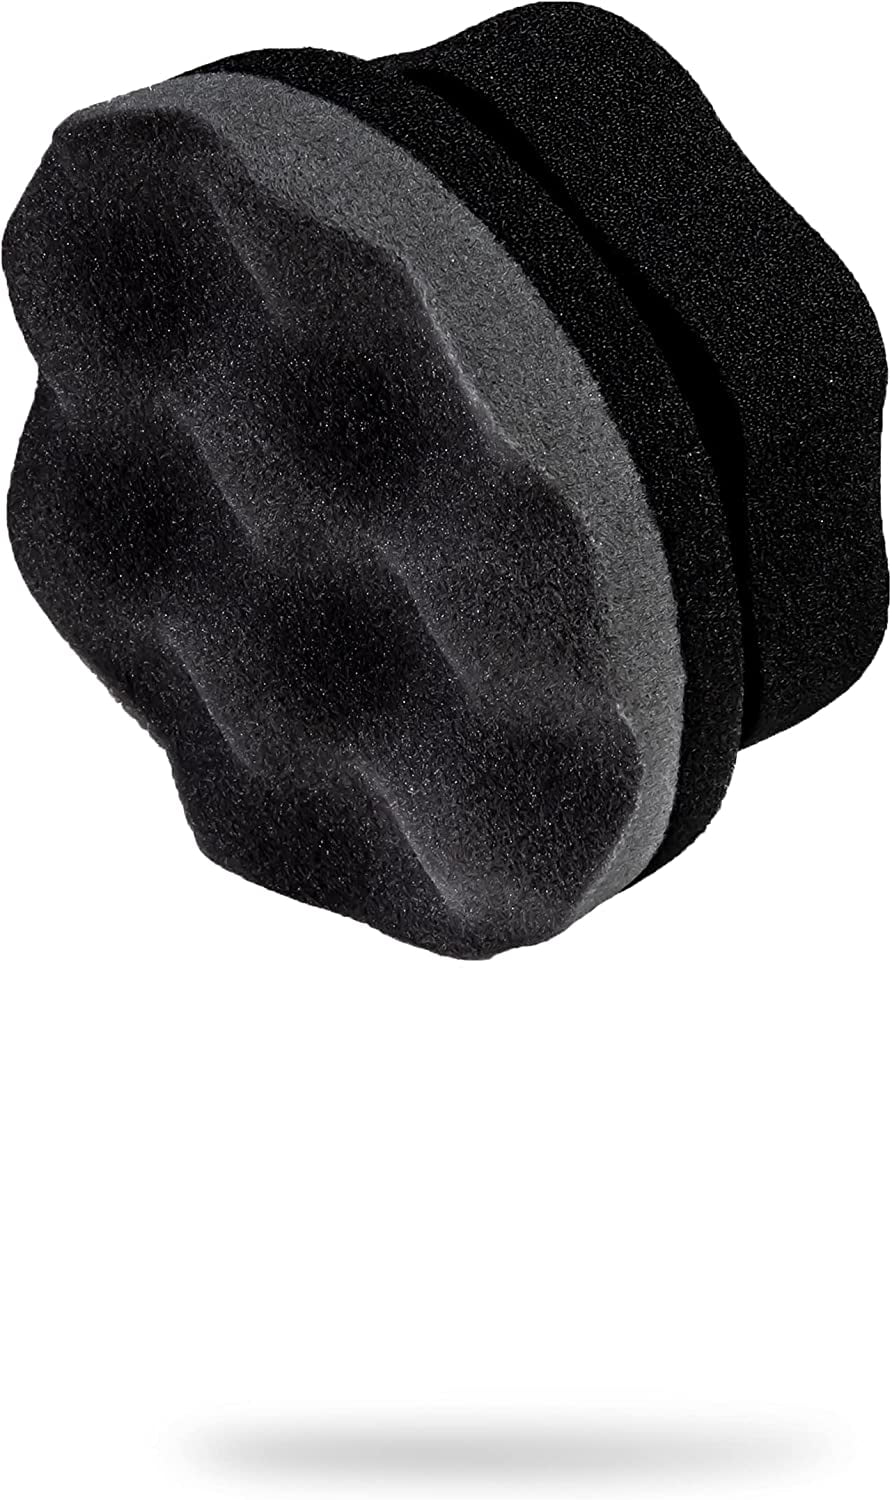 Details about   10pcs Car Auto Detailing Cleaning Wheels Tire Multi-Purpose Foam Sponge Pad Kits 